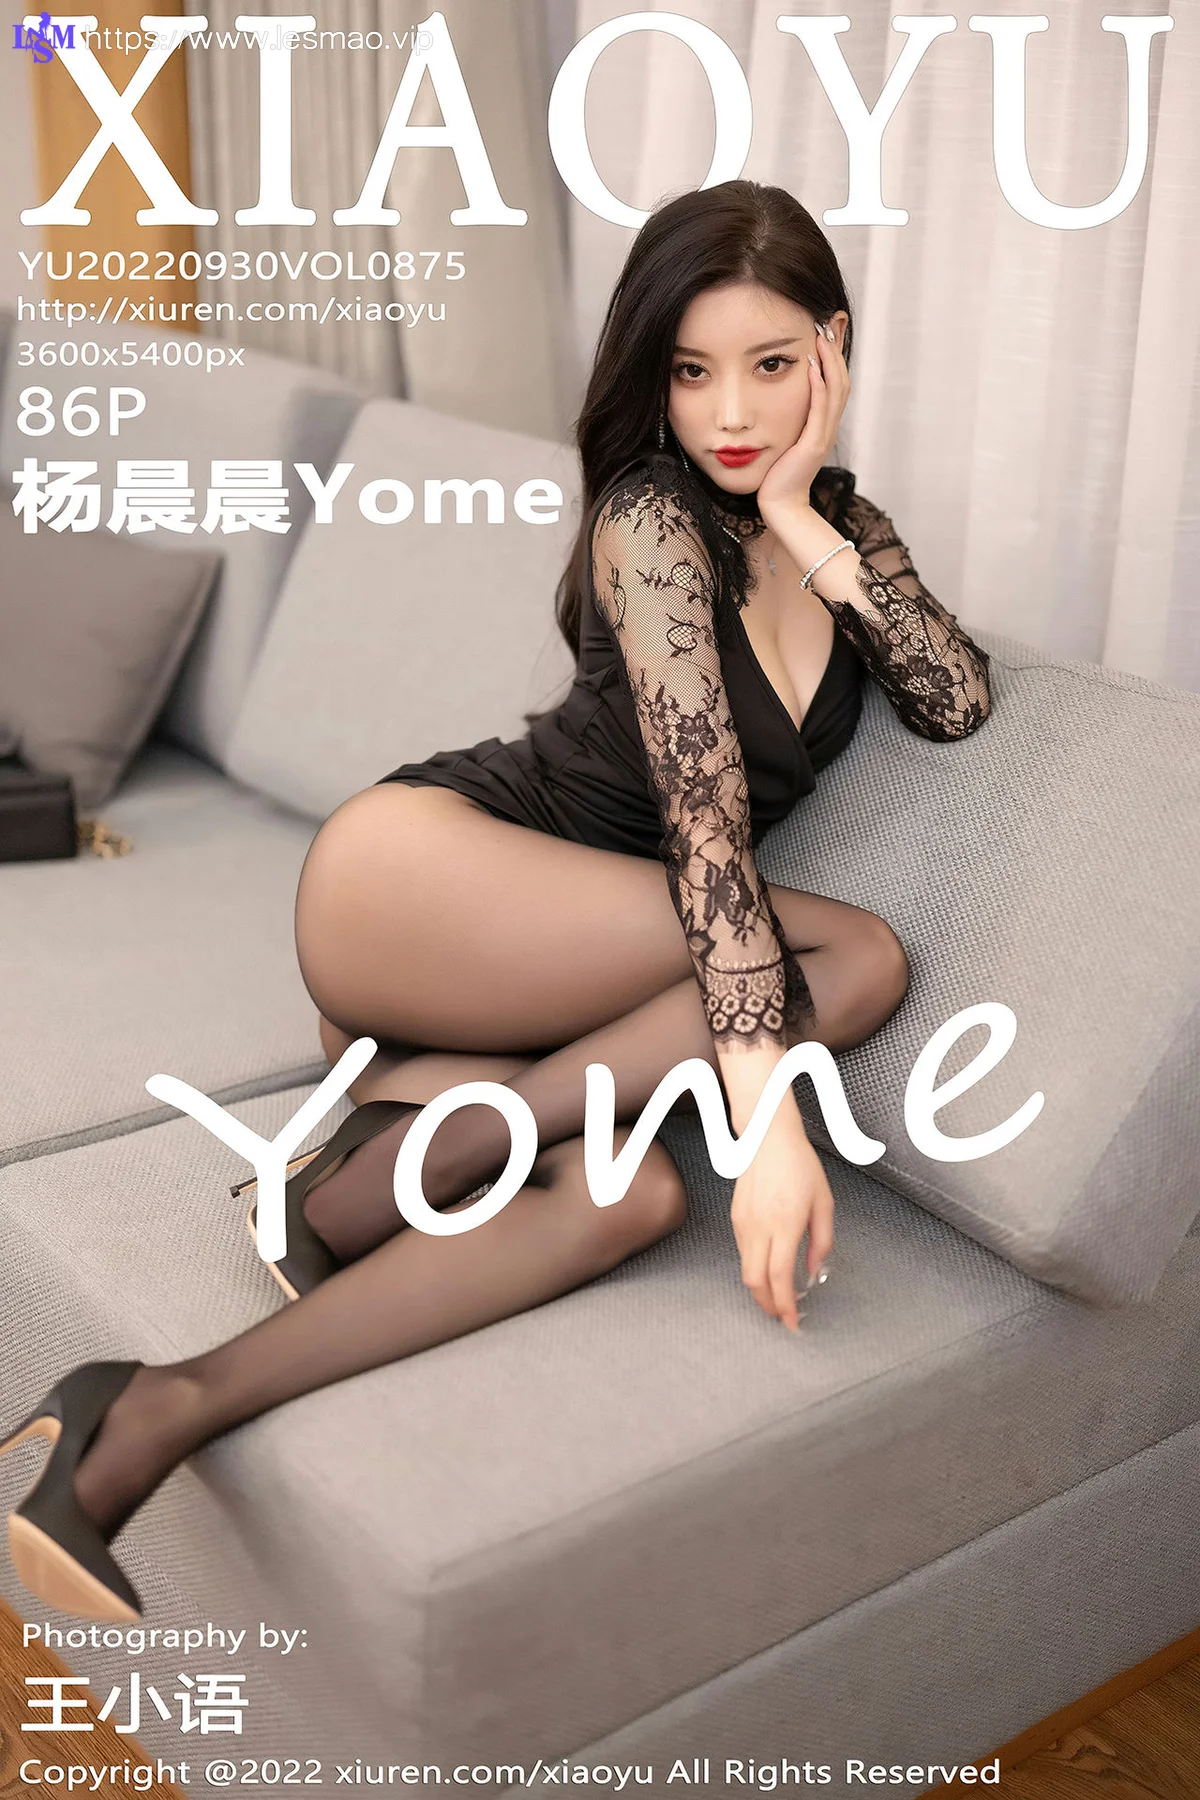 XIAOYU  语画界 Vol.875  杨晨晨Yome 黑色蕾丝内衣 - 3